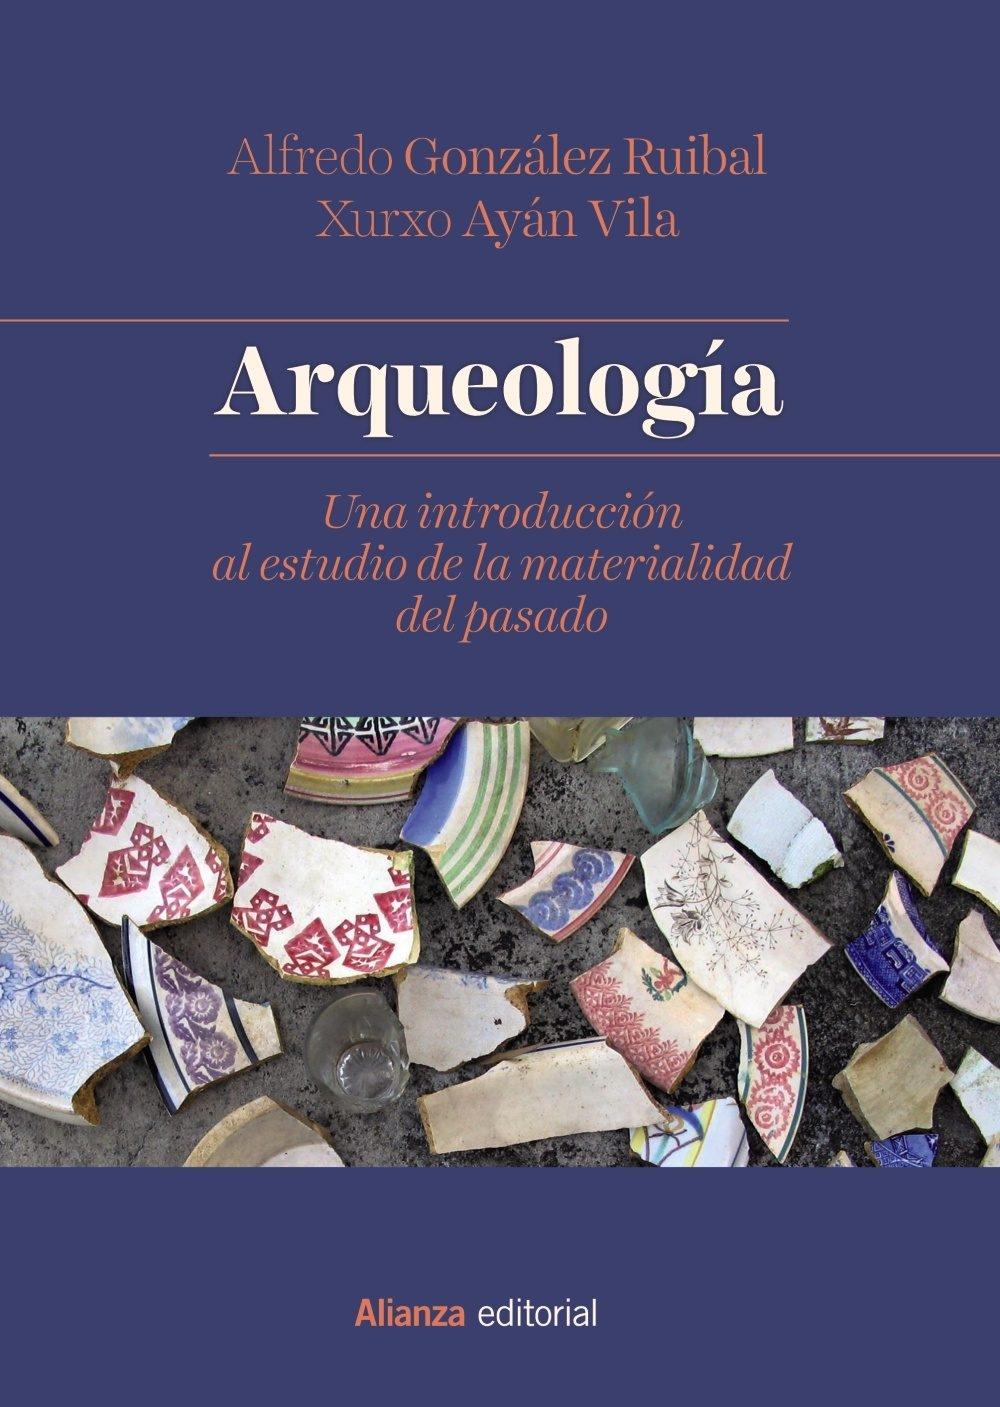 Arqueología "Una introducción al estudio de la materialidad del pasado"